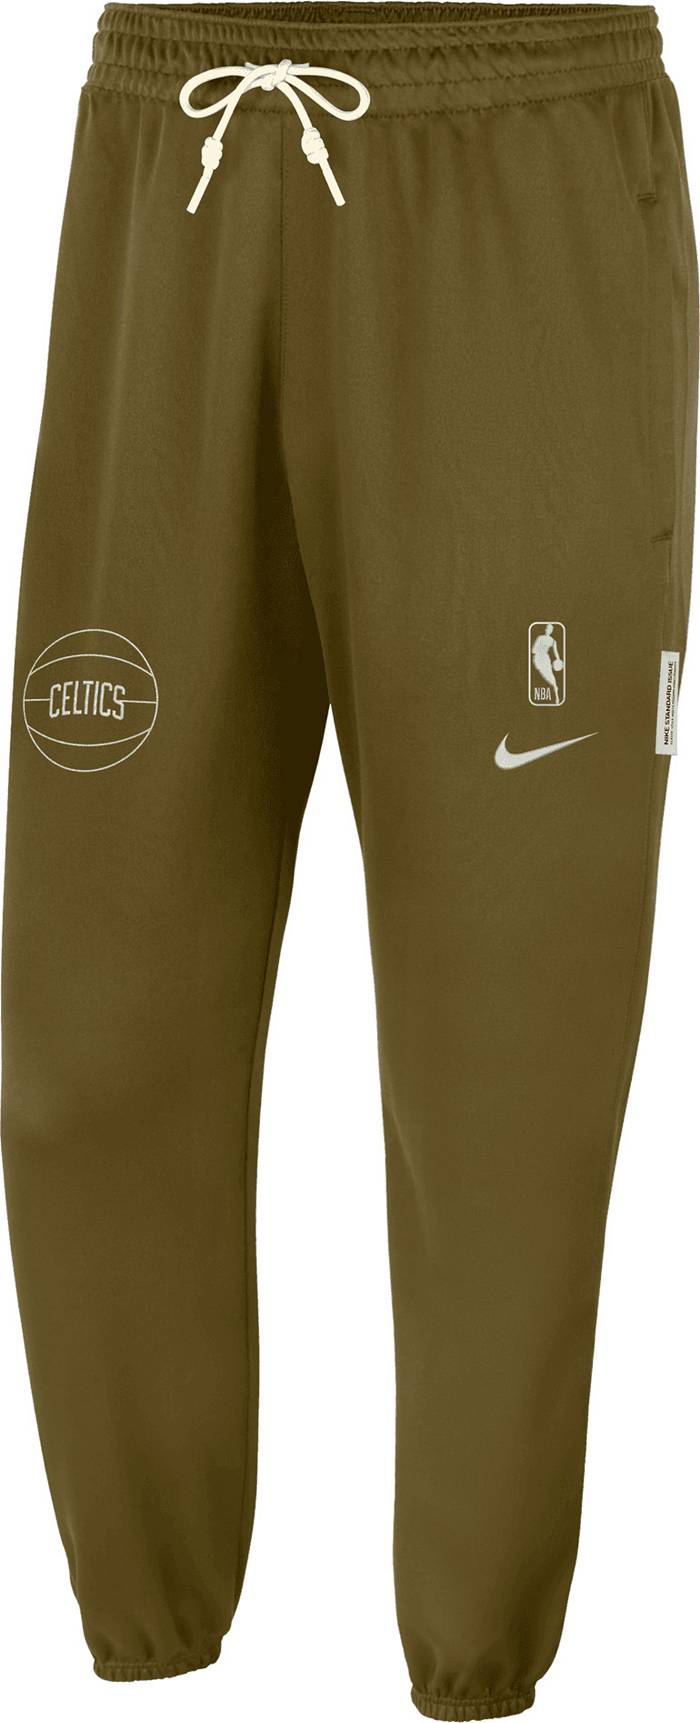 Boston Celtics Standard Issue Men's Nike Dri-Fit NBA Sweatshirt